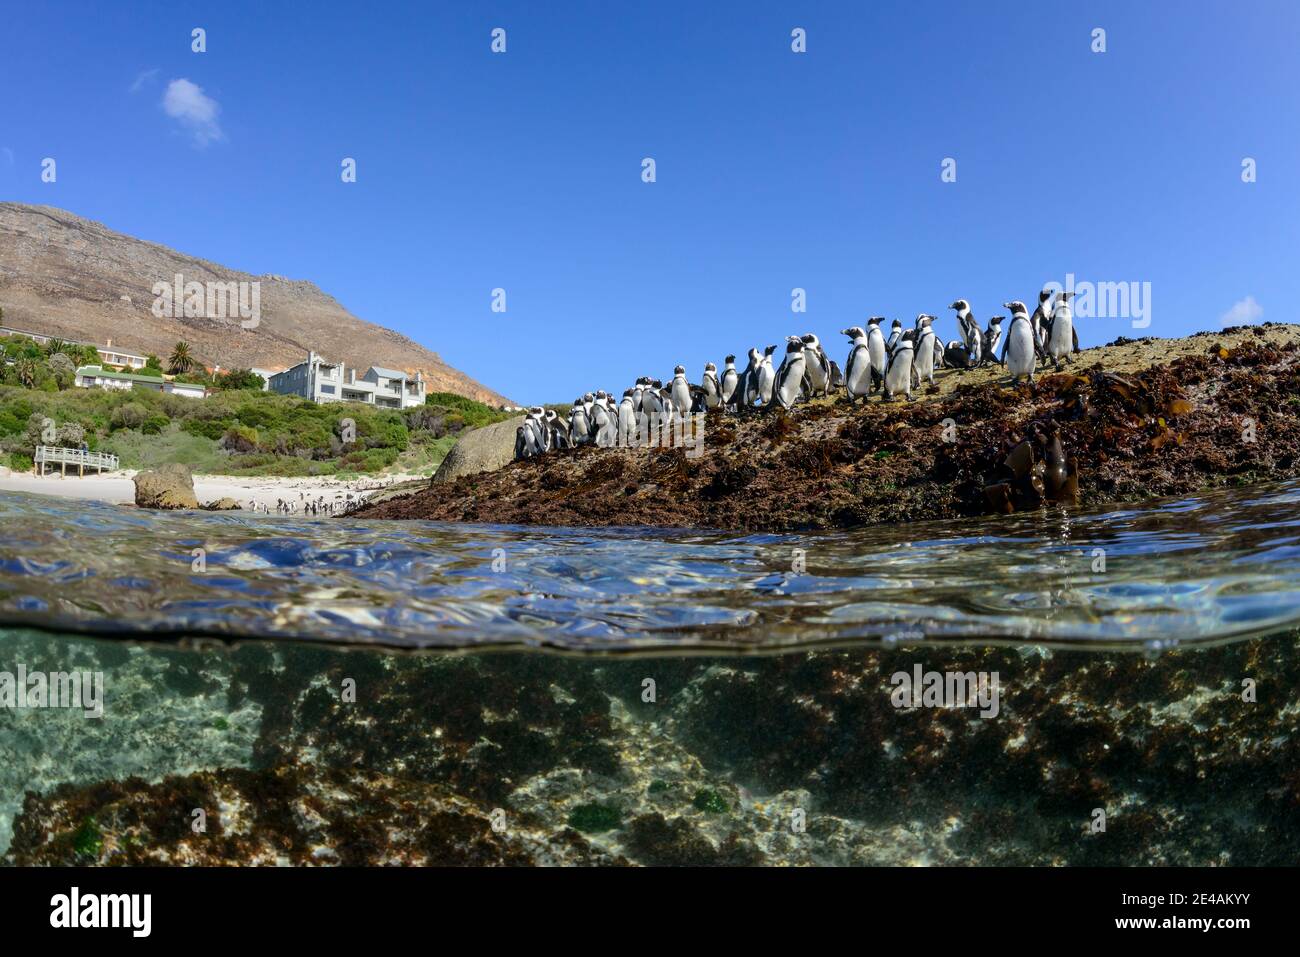 Split-Level-Bild einer Kolonie von afrikanischen Pinguinen (Spheniscus demersus), Boulders Beach oder Boulders Bay, Simons Town, Südafrika, Indischer Ozean Stockfoto